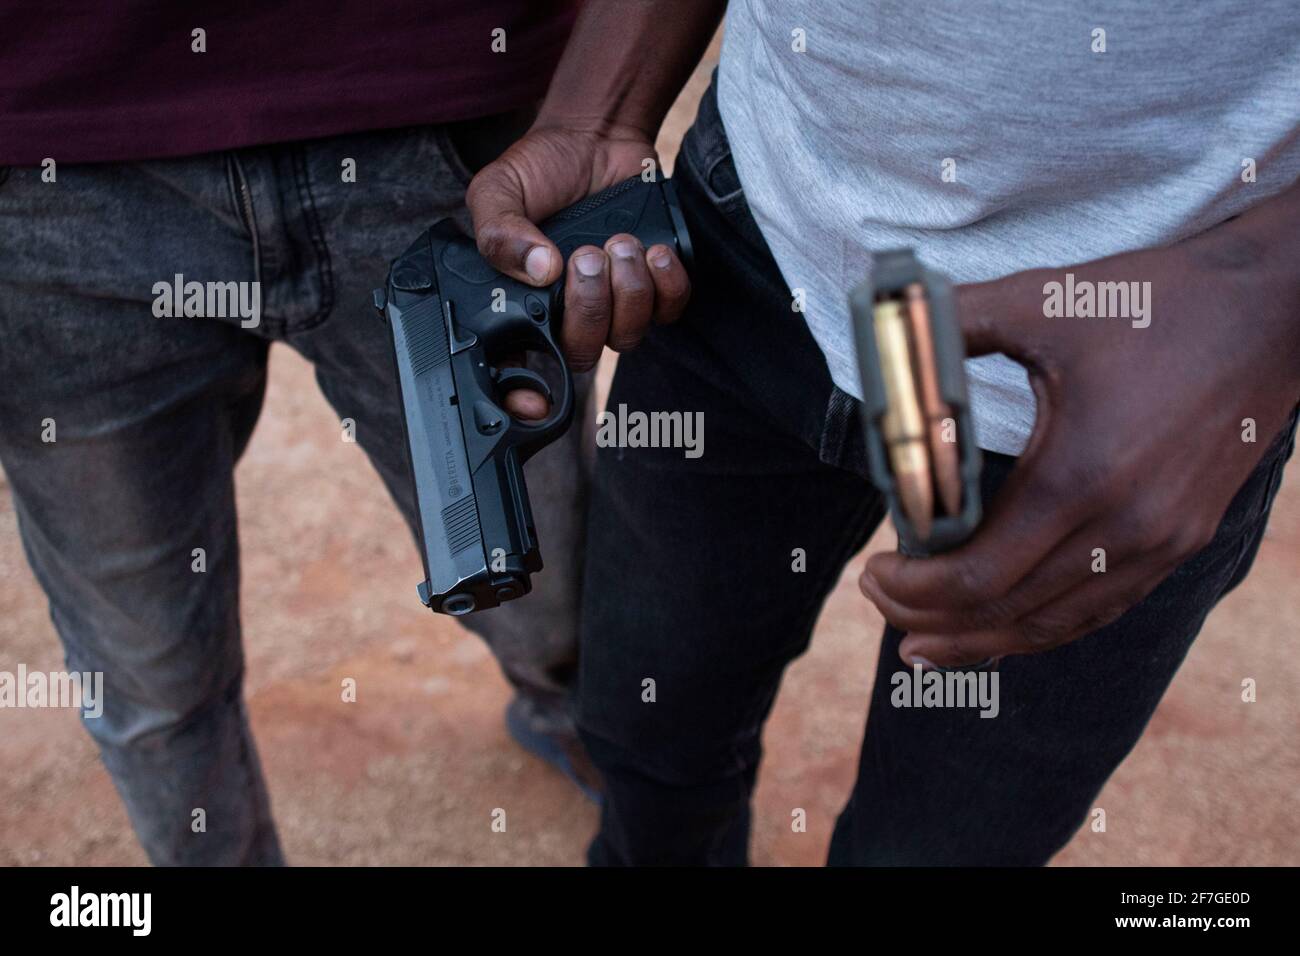 Ein Gangster aus dem illegalen Goldbergbau namens Zama Zama Banden, der am 5. September 2020 sein Arsenal in der Gemeinde Xawela, Carletonville, in der Nähe von Johannesburg, Südafrika, vorstellte. (Foto von Manash das/Sipa USA) Quelle: SIPA USA/Alamy Live News Stockfoto